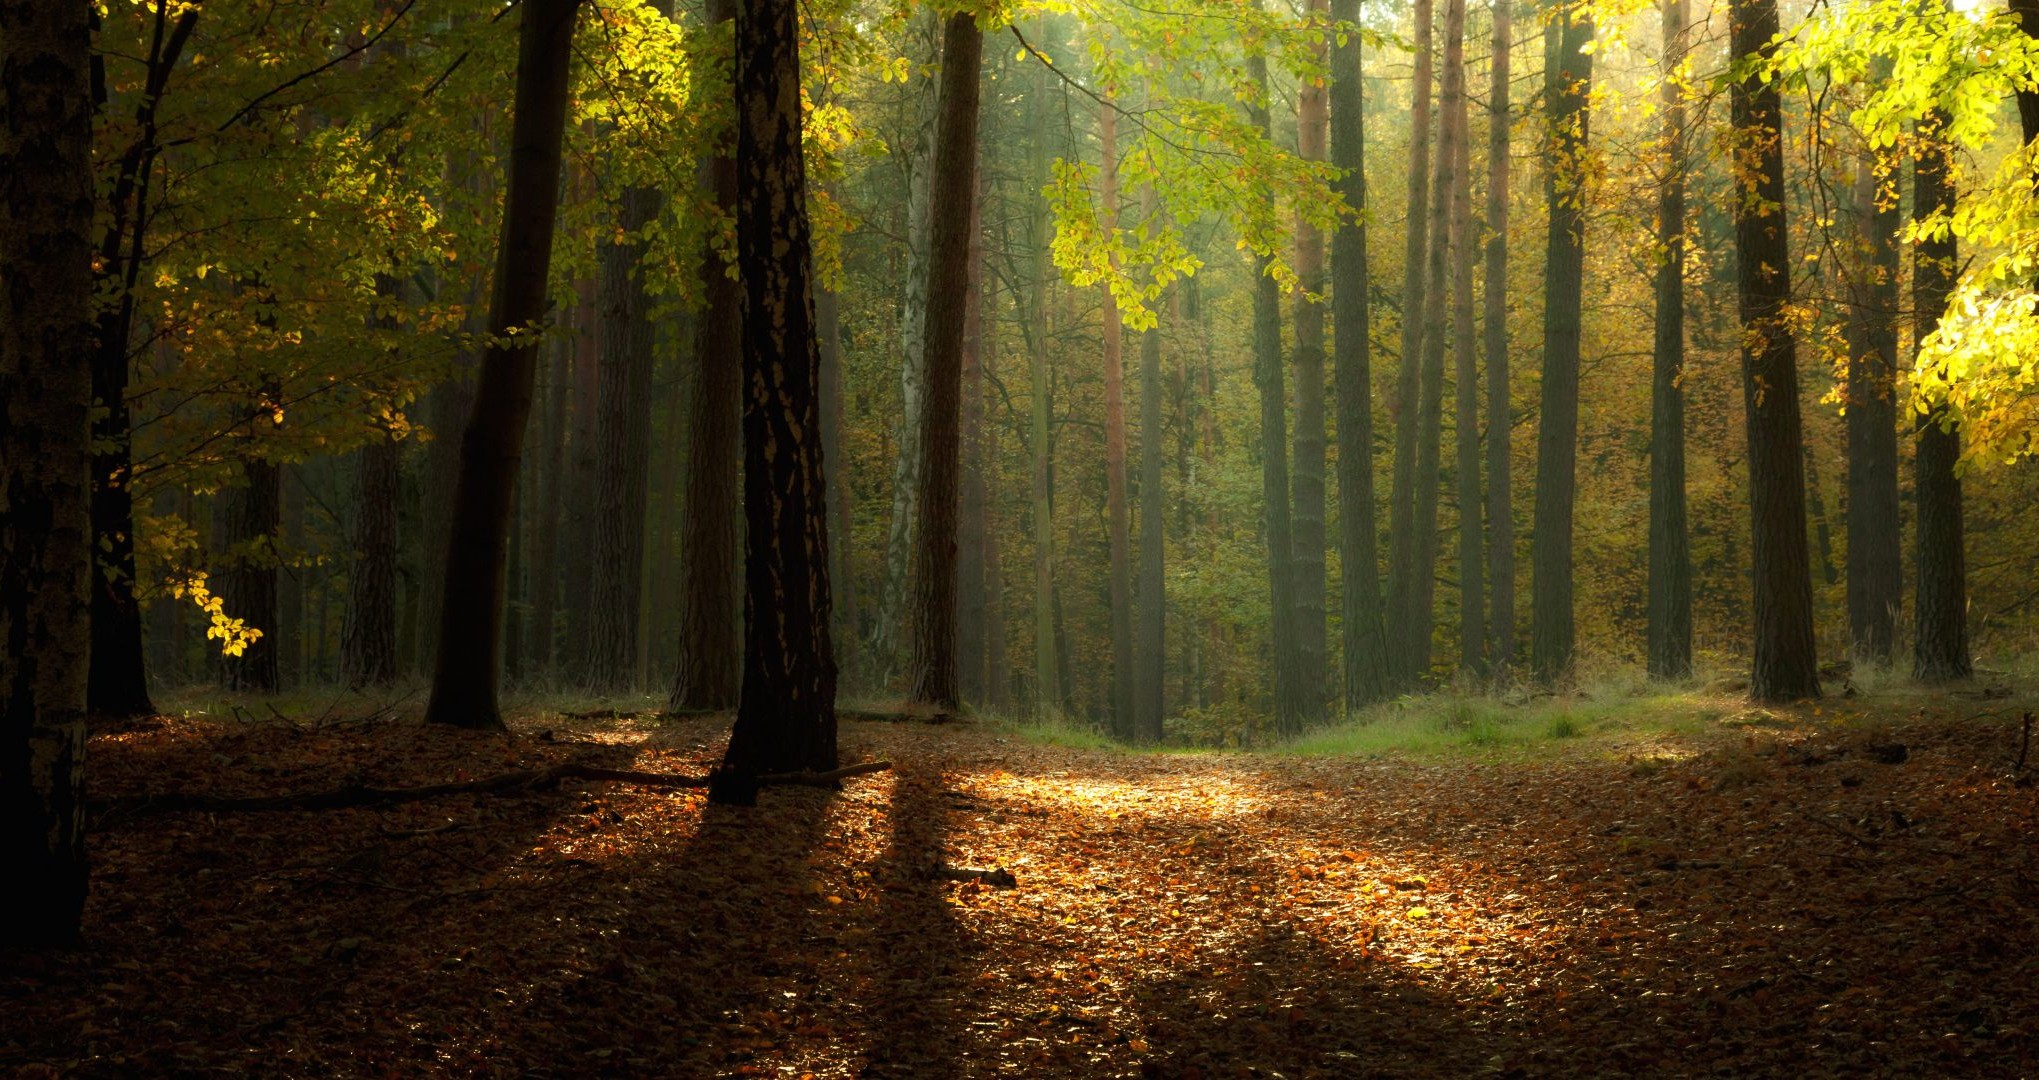 осень осень древесины лист дерево туман туман природа парк пейзаж рассвет свет руководство санбим хорошую погоду солнце подсветкой тропинка походу пышные